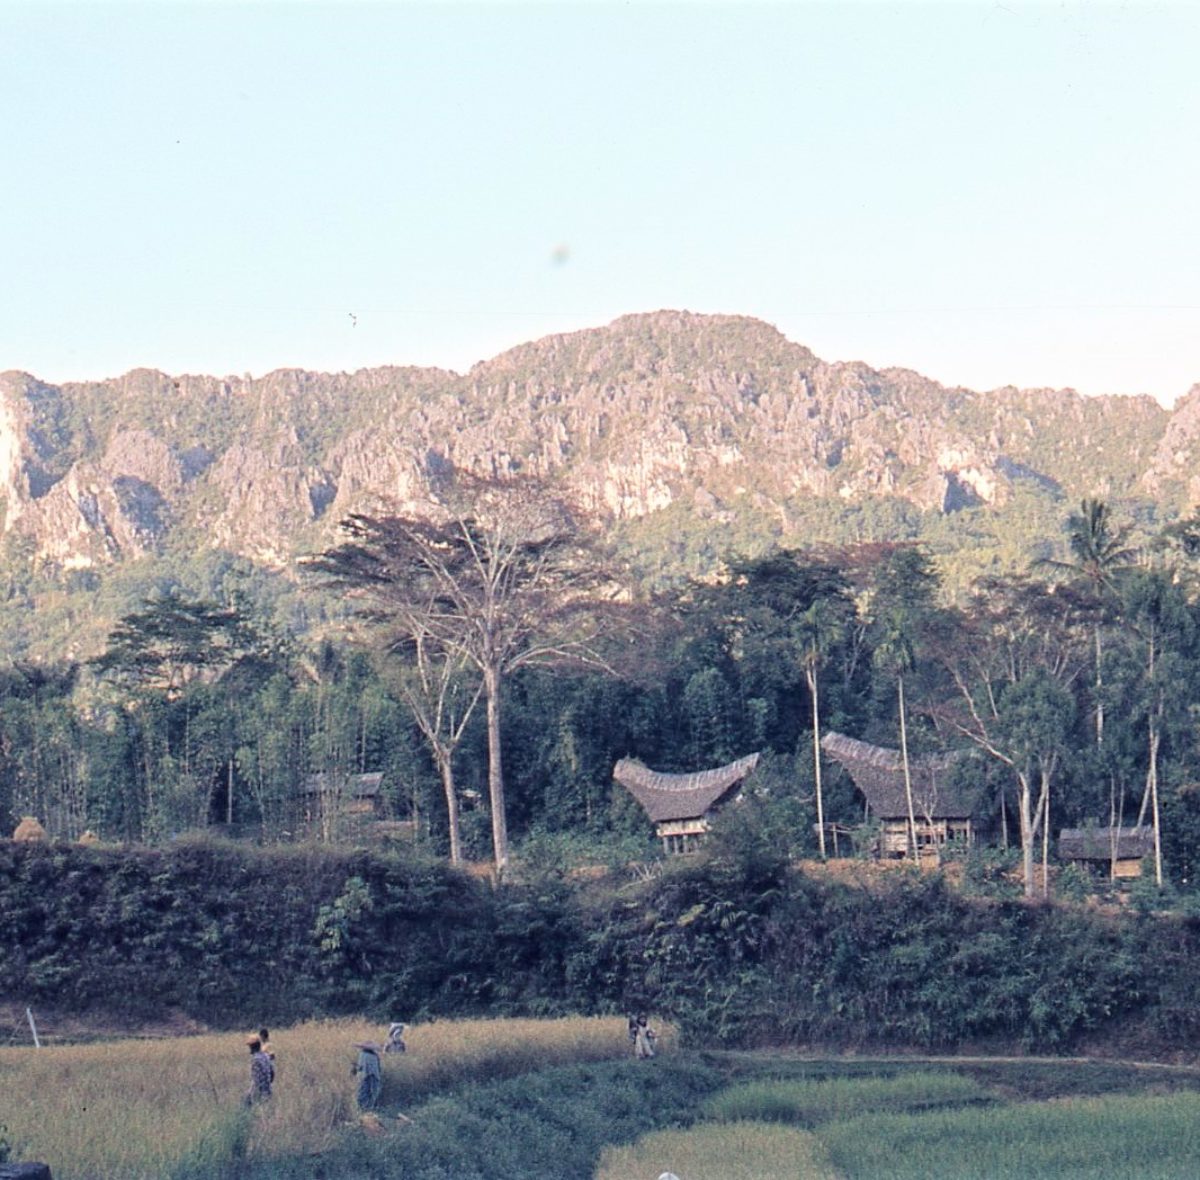 I villaggi in origine erano situati in zone remote della montagna . In seguito , con l’introduzione della coltivazione del caffè , la popolazione si spostò verso le zone pianeggianti